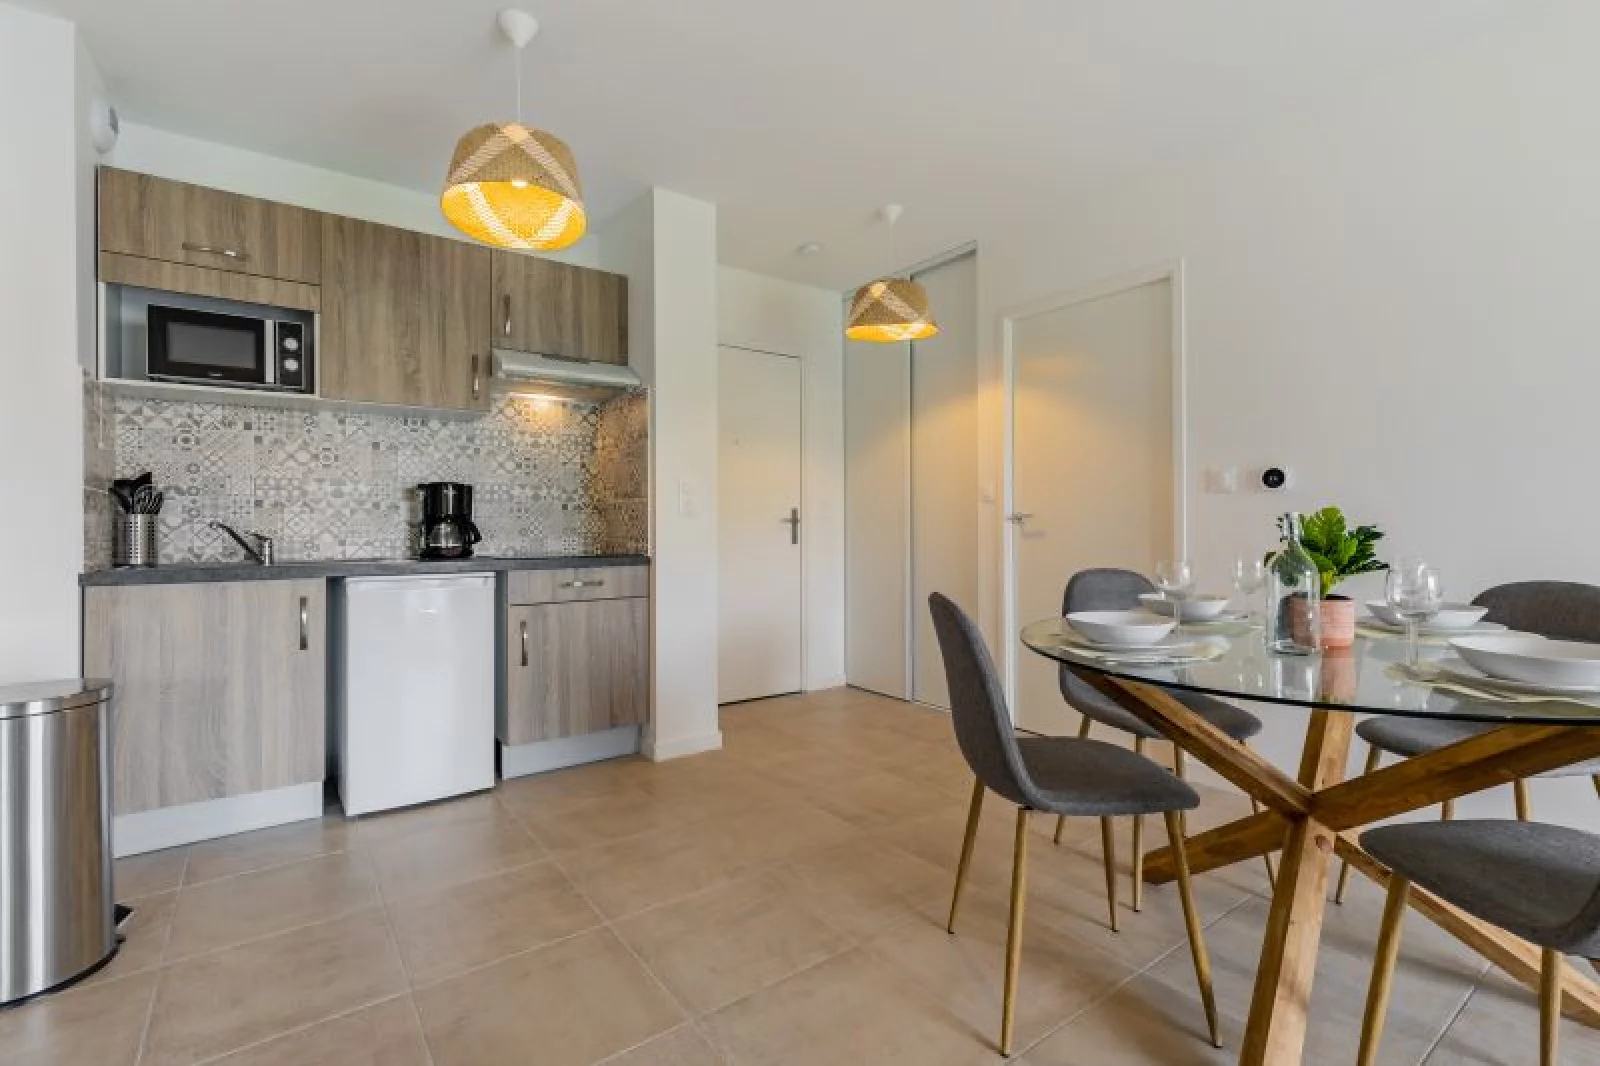 Location appartement meublé 2 pièces 47m² (Bordeaux / Saint-Augustin) 